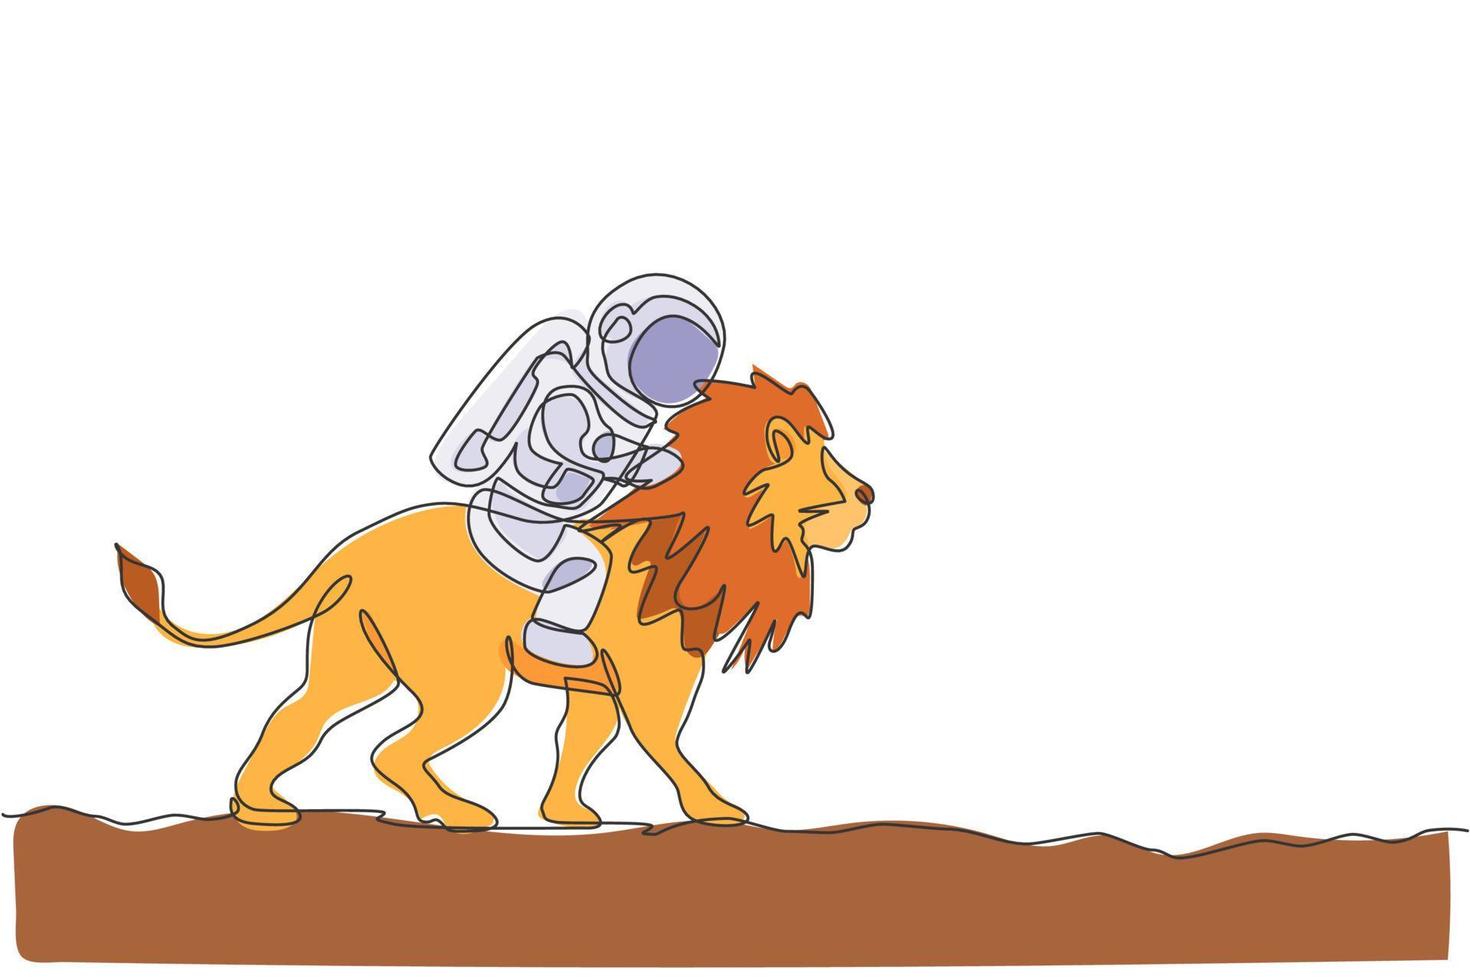 disegno a linea continua di un cosmonauta con un leone a cavallo della tuta spaziale, animale selvatico nella superficie della luna. concetto di viaggio safari astronauta fantasy. illustrazione vettoriale di design grafico di una linea alla moda di disegno